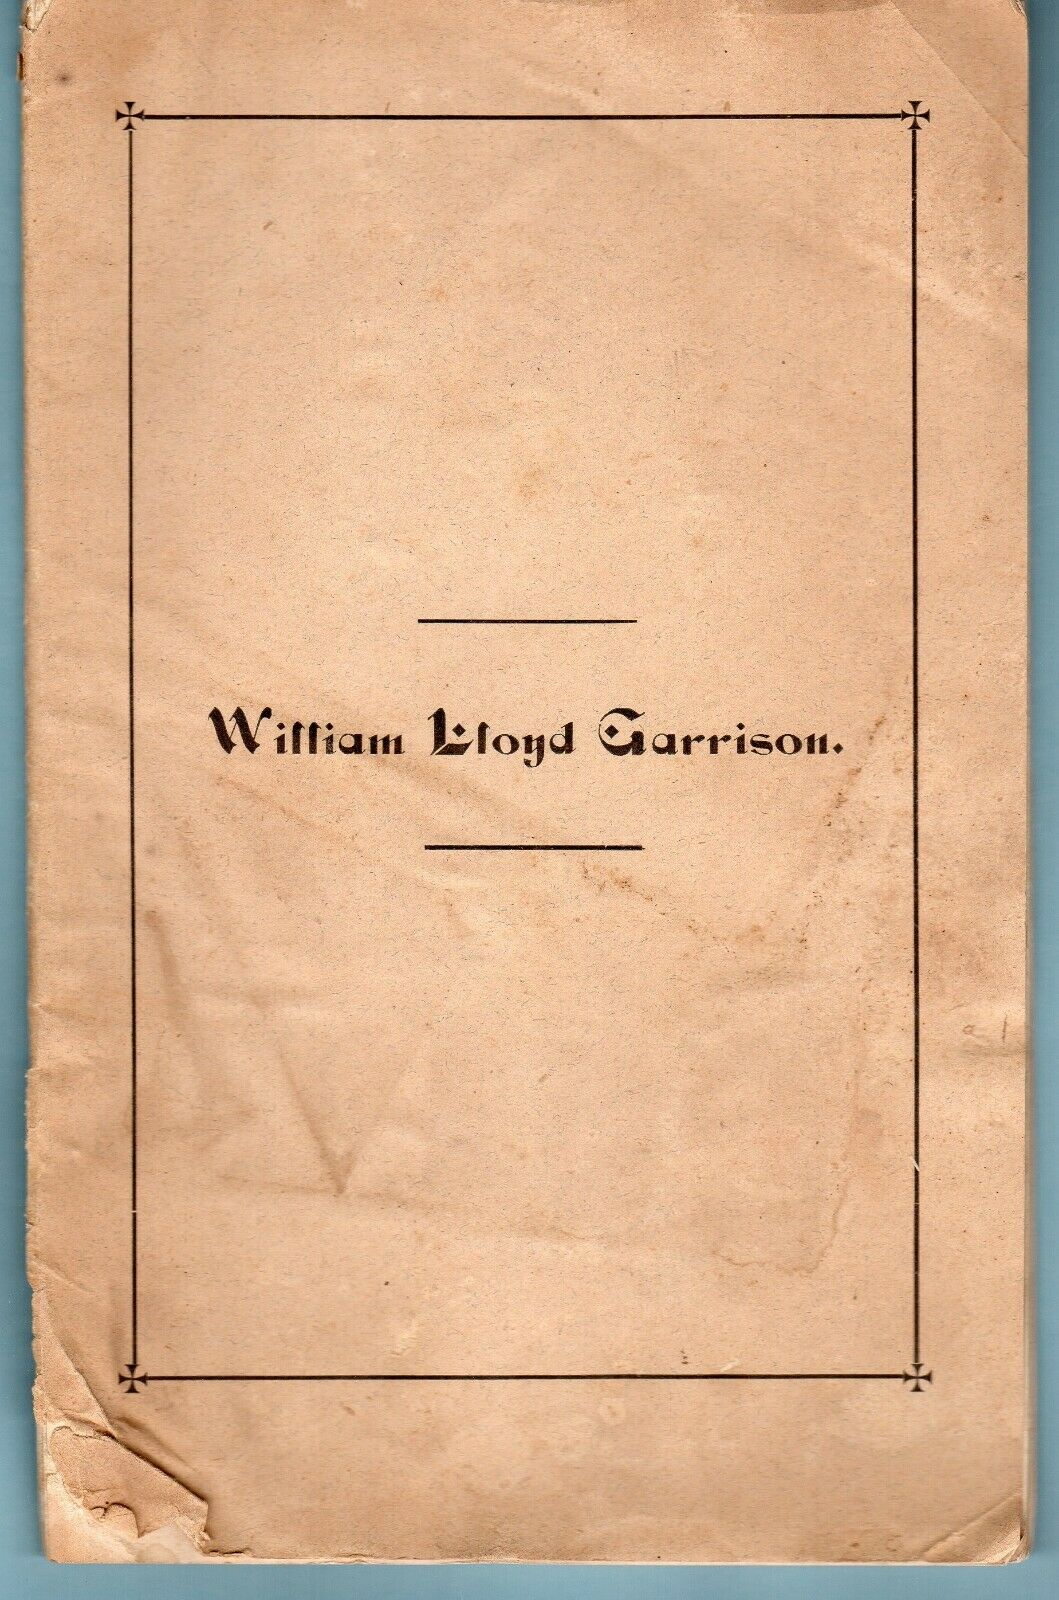 1879 WILLIAM LLOYD GARRISON. Life & History of Anti-Slavery Preached on Death of Garrison